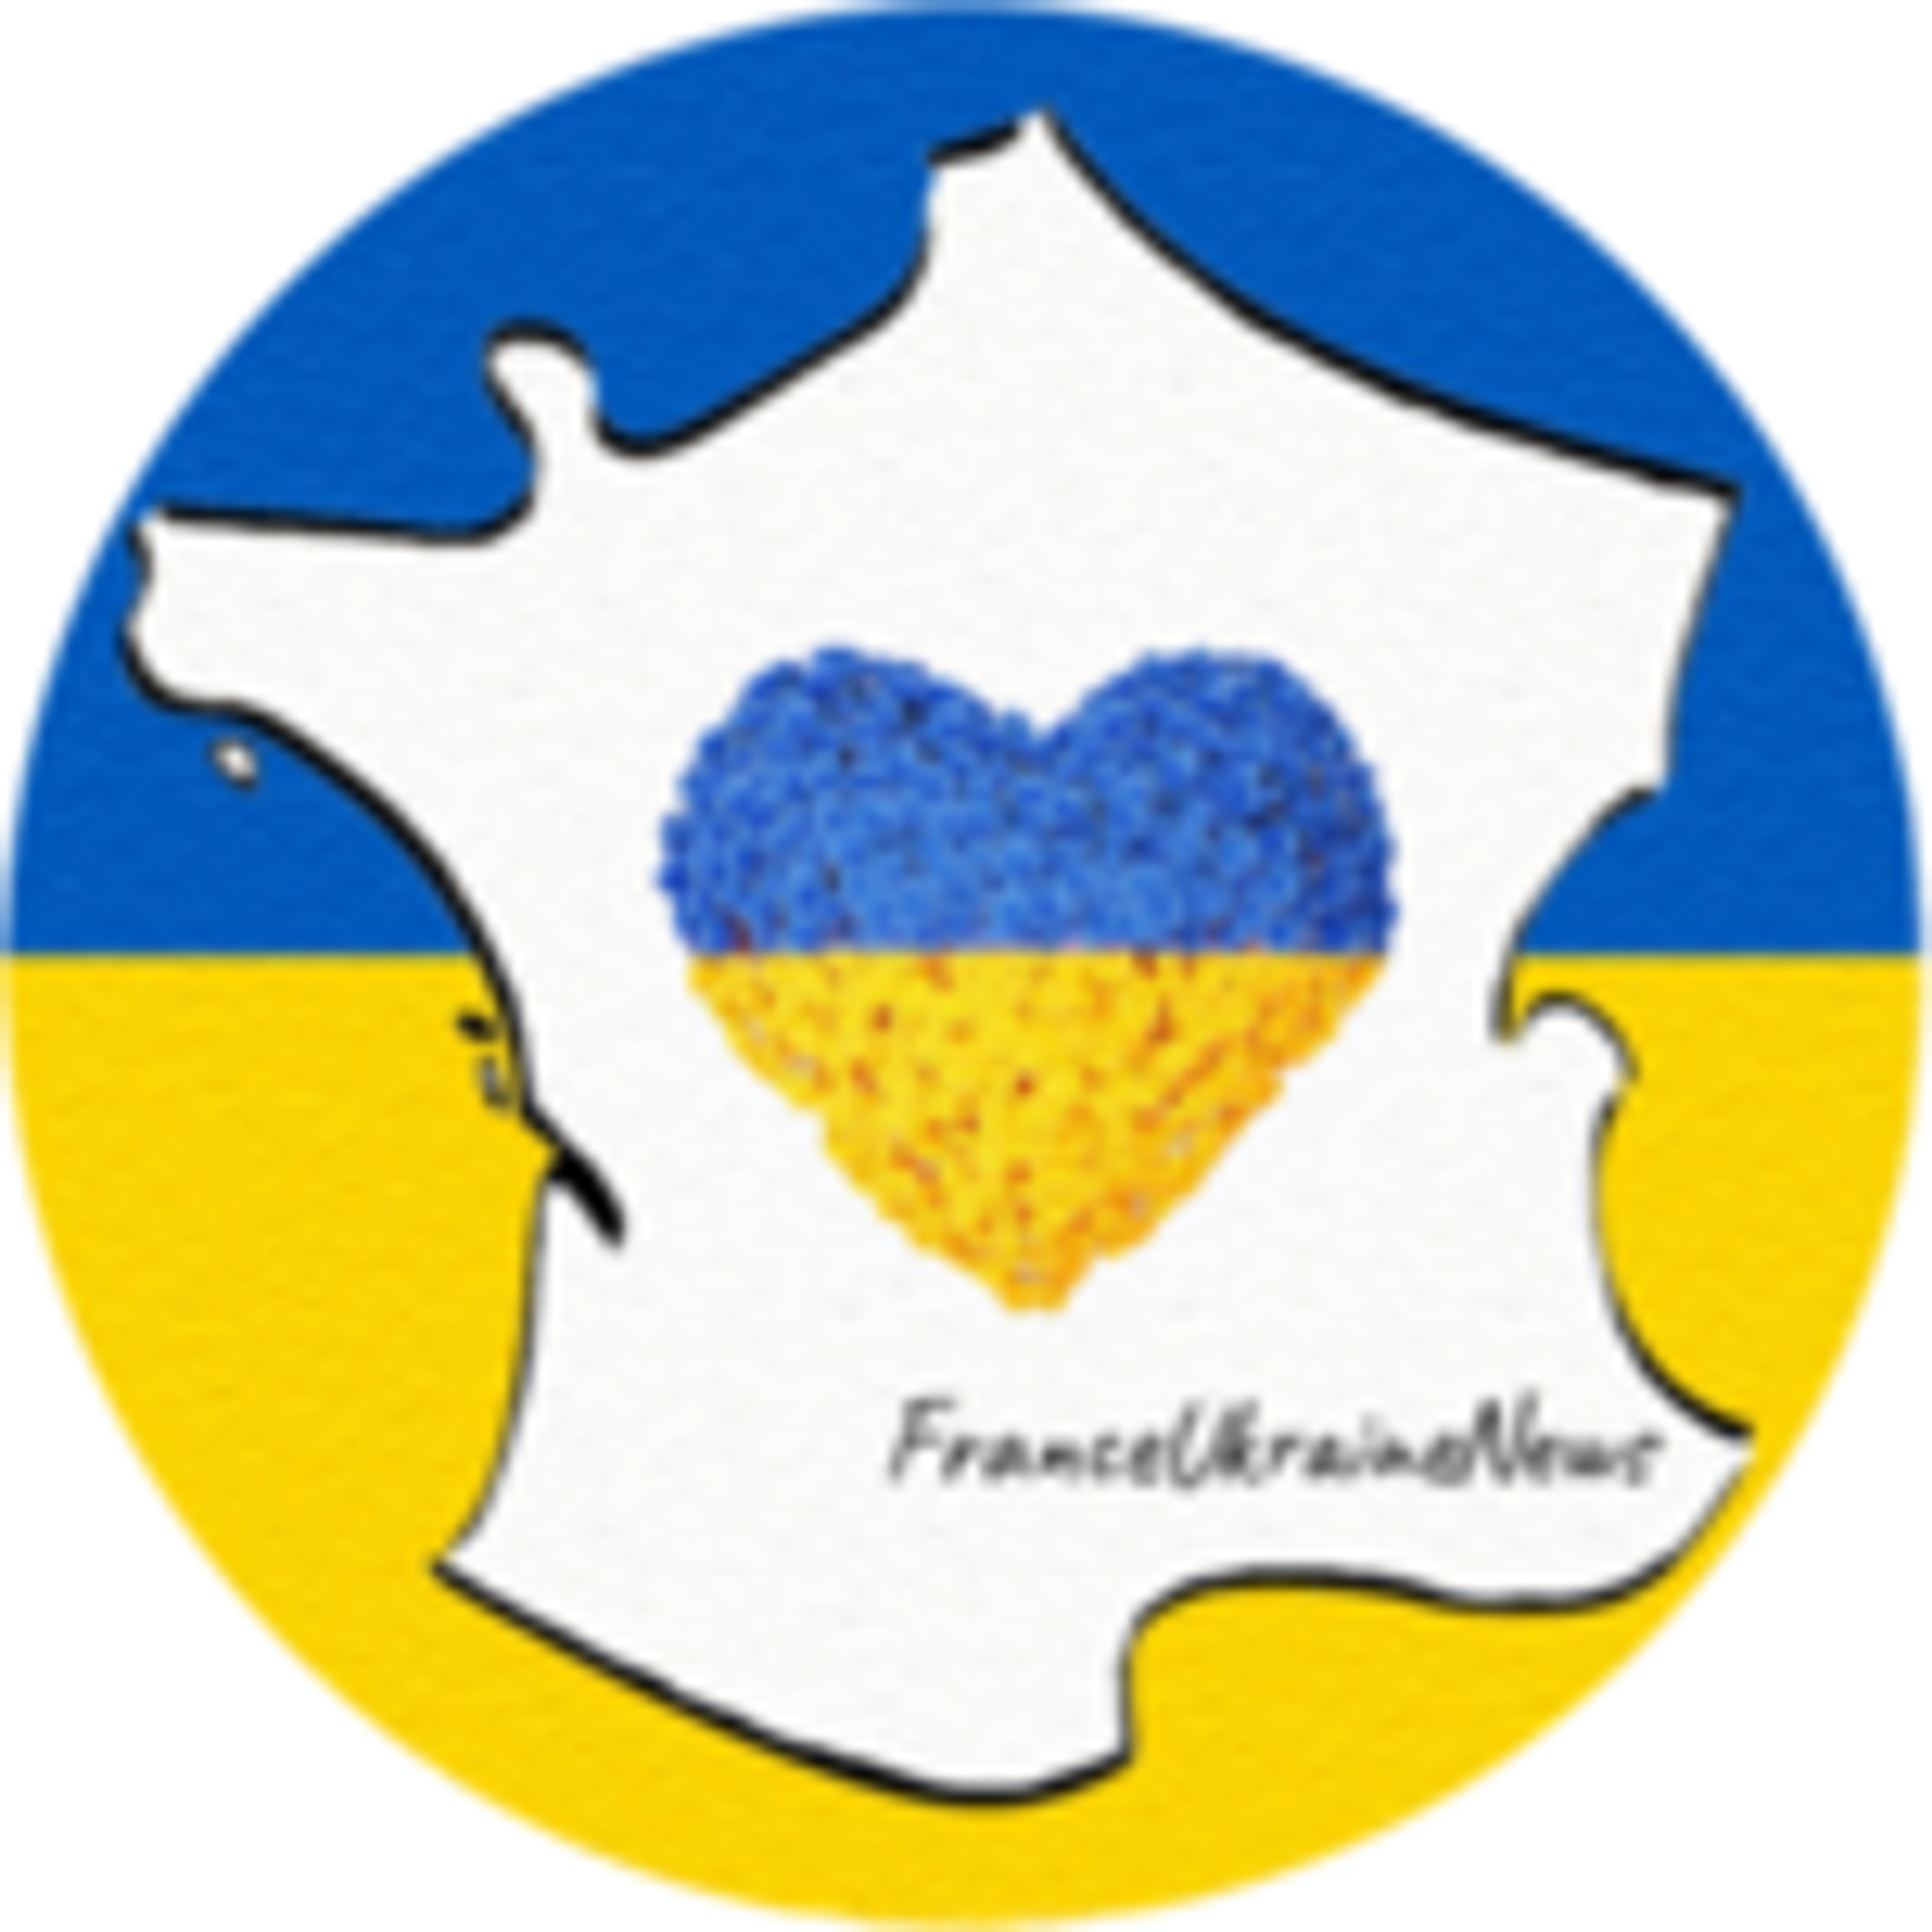 Aide aux réfugiés Ukrainiens en France | France Ukraine News